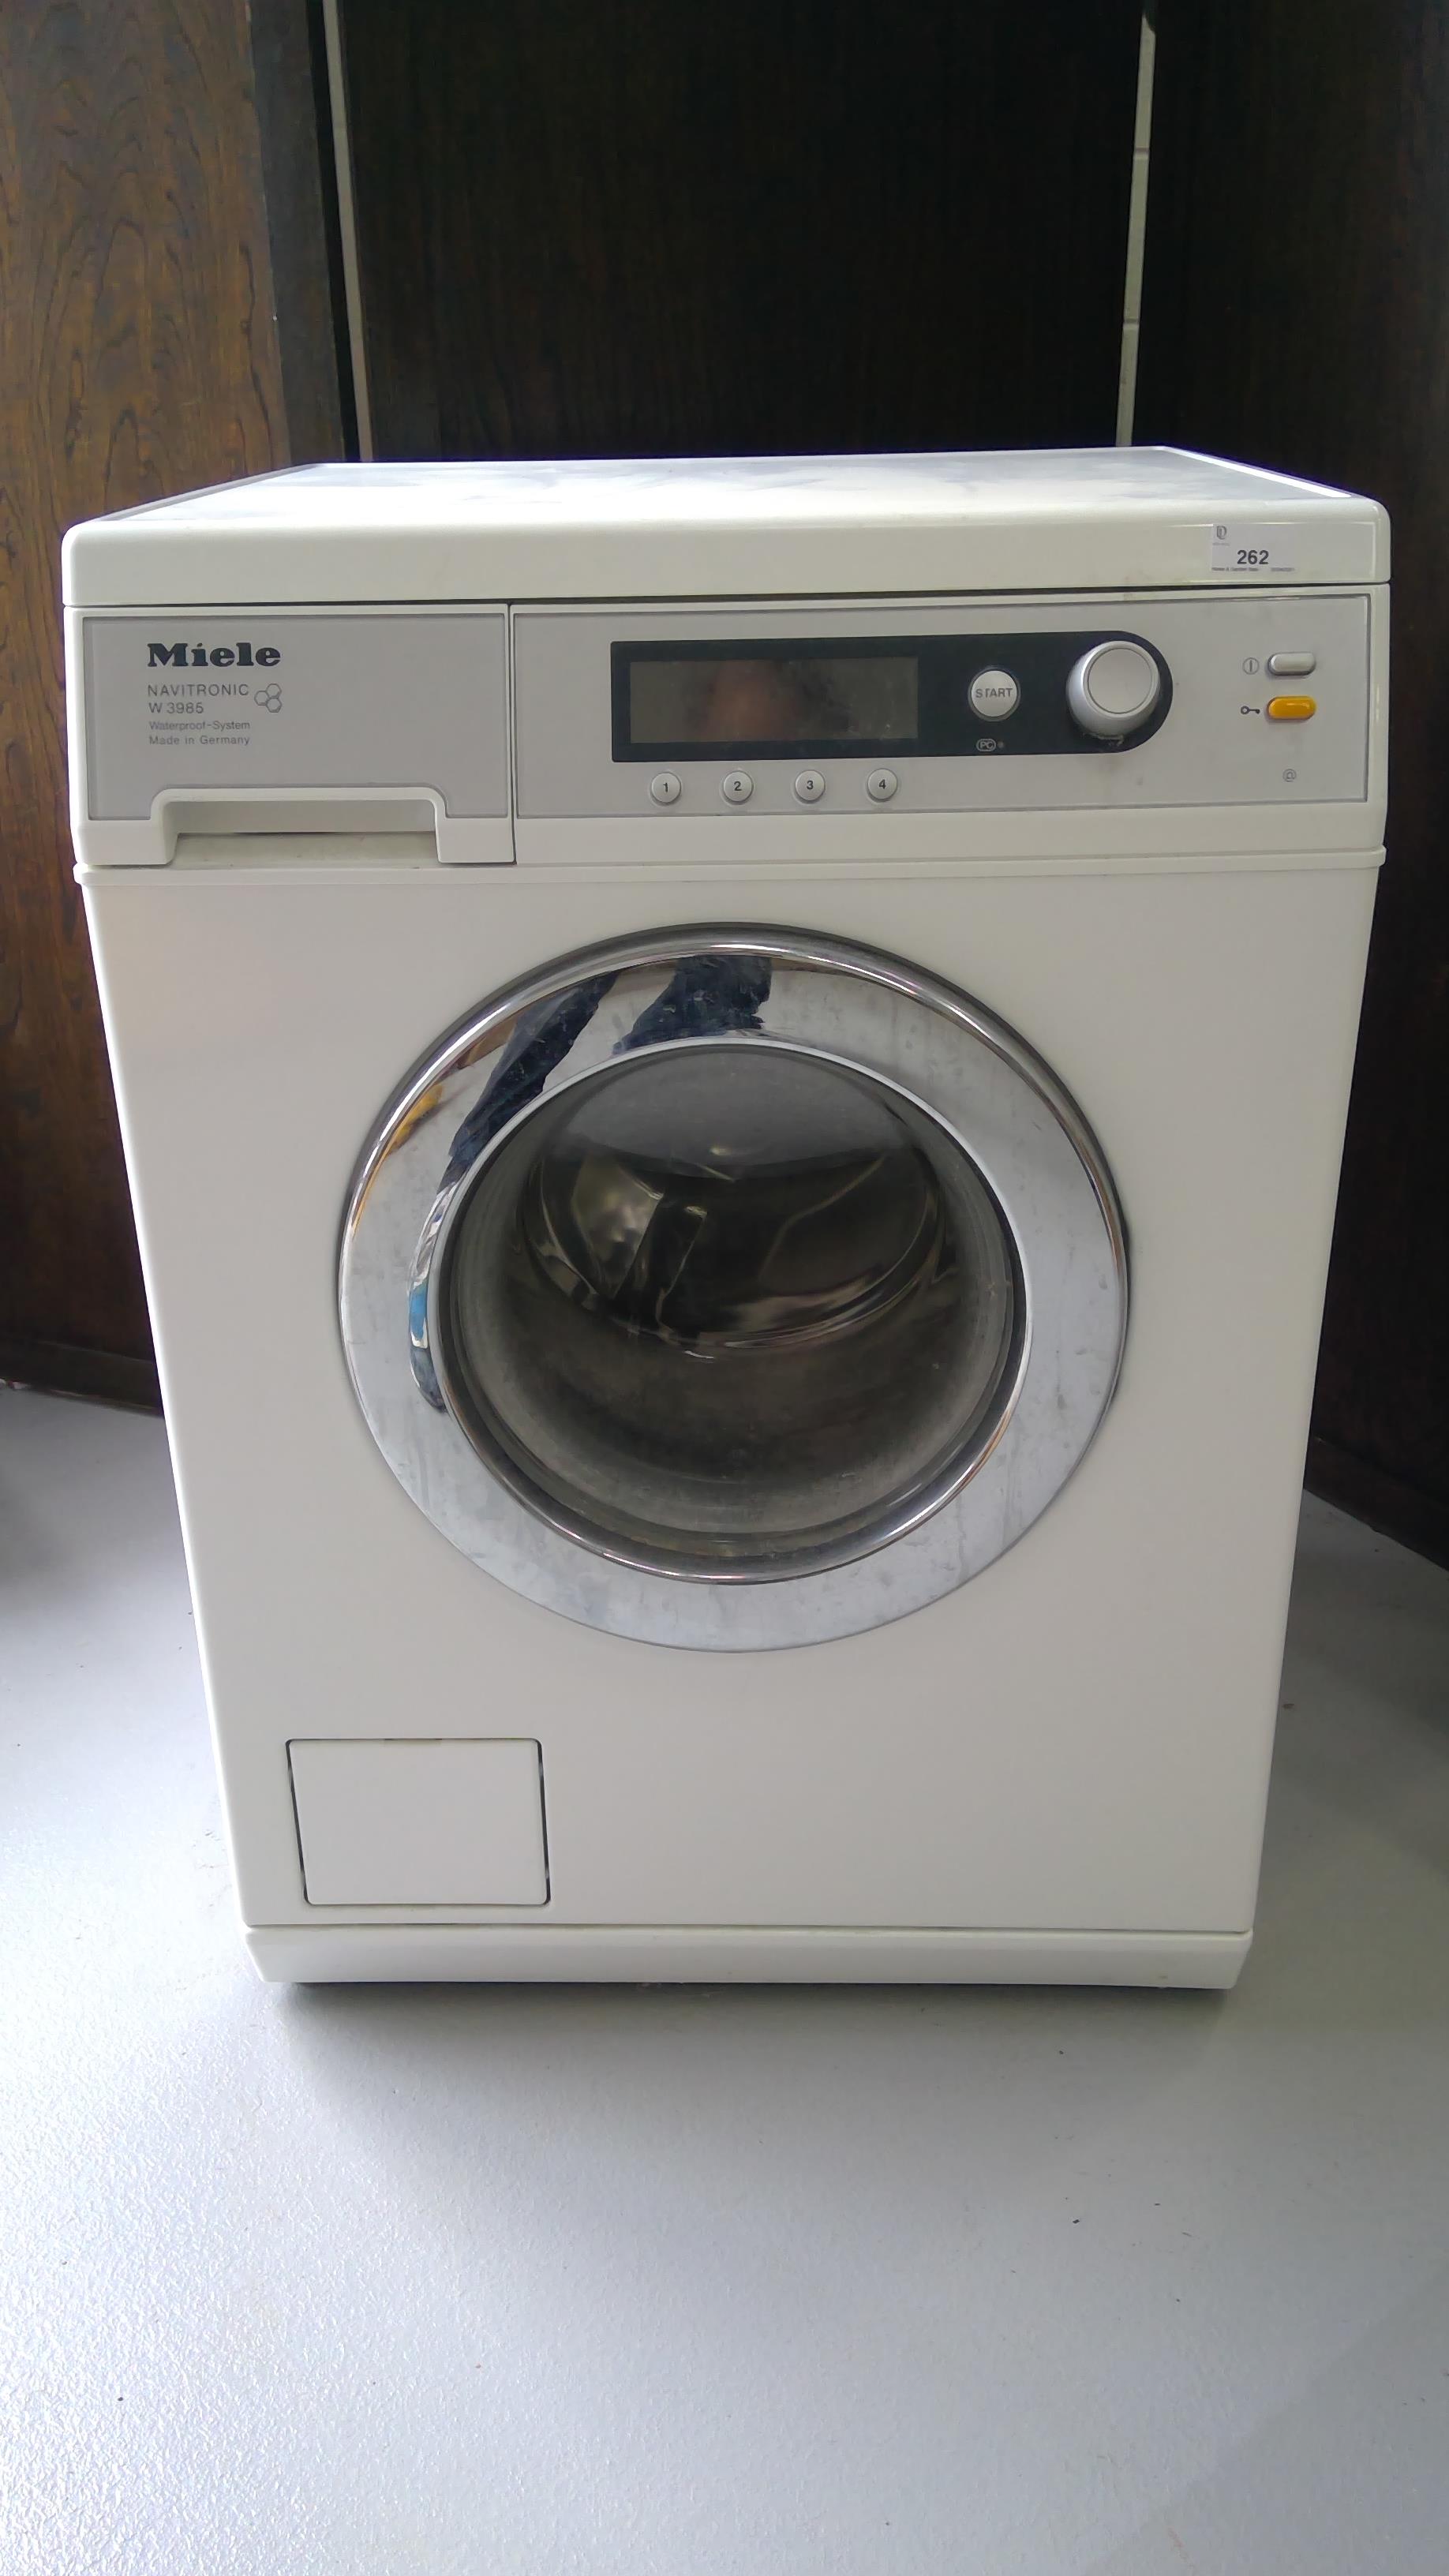 Miele Navitronic W3985 washing machine.